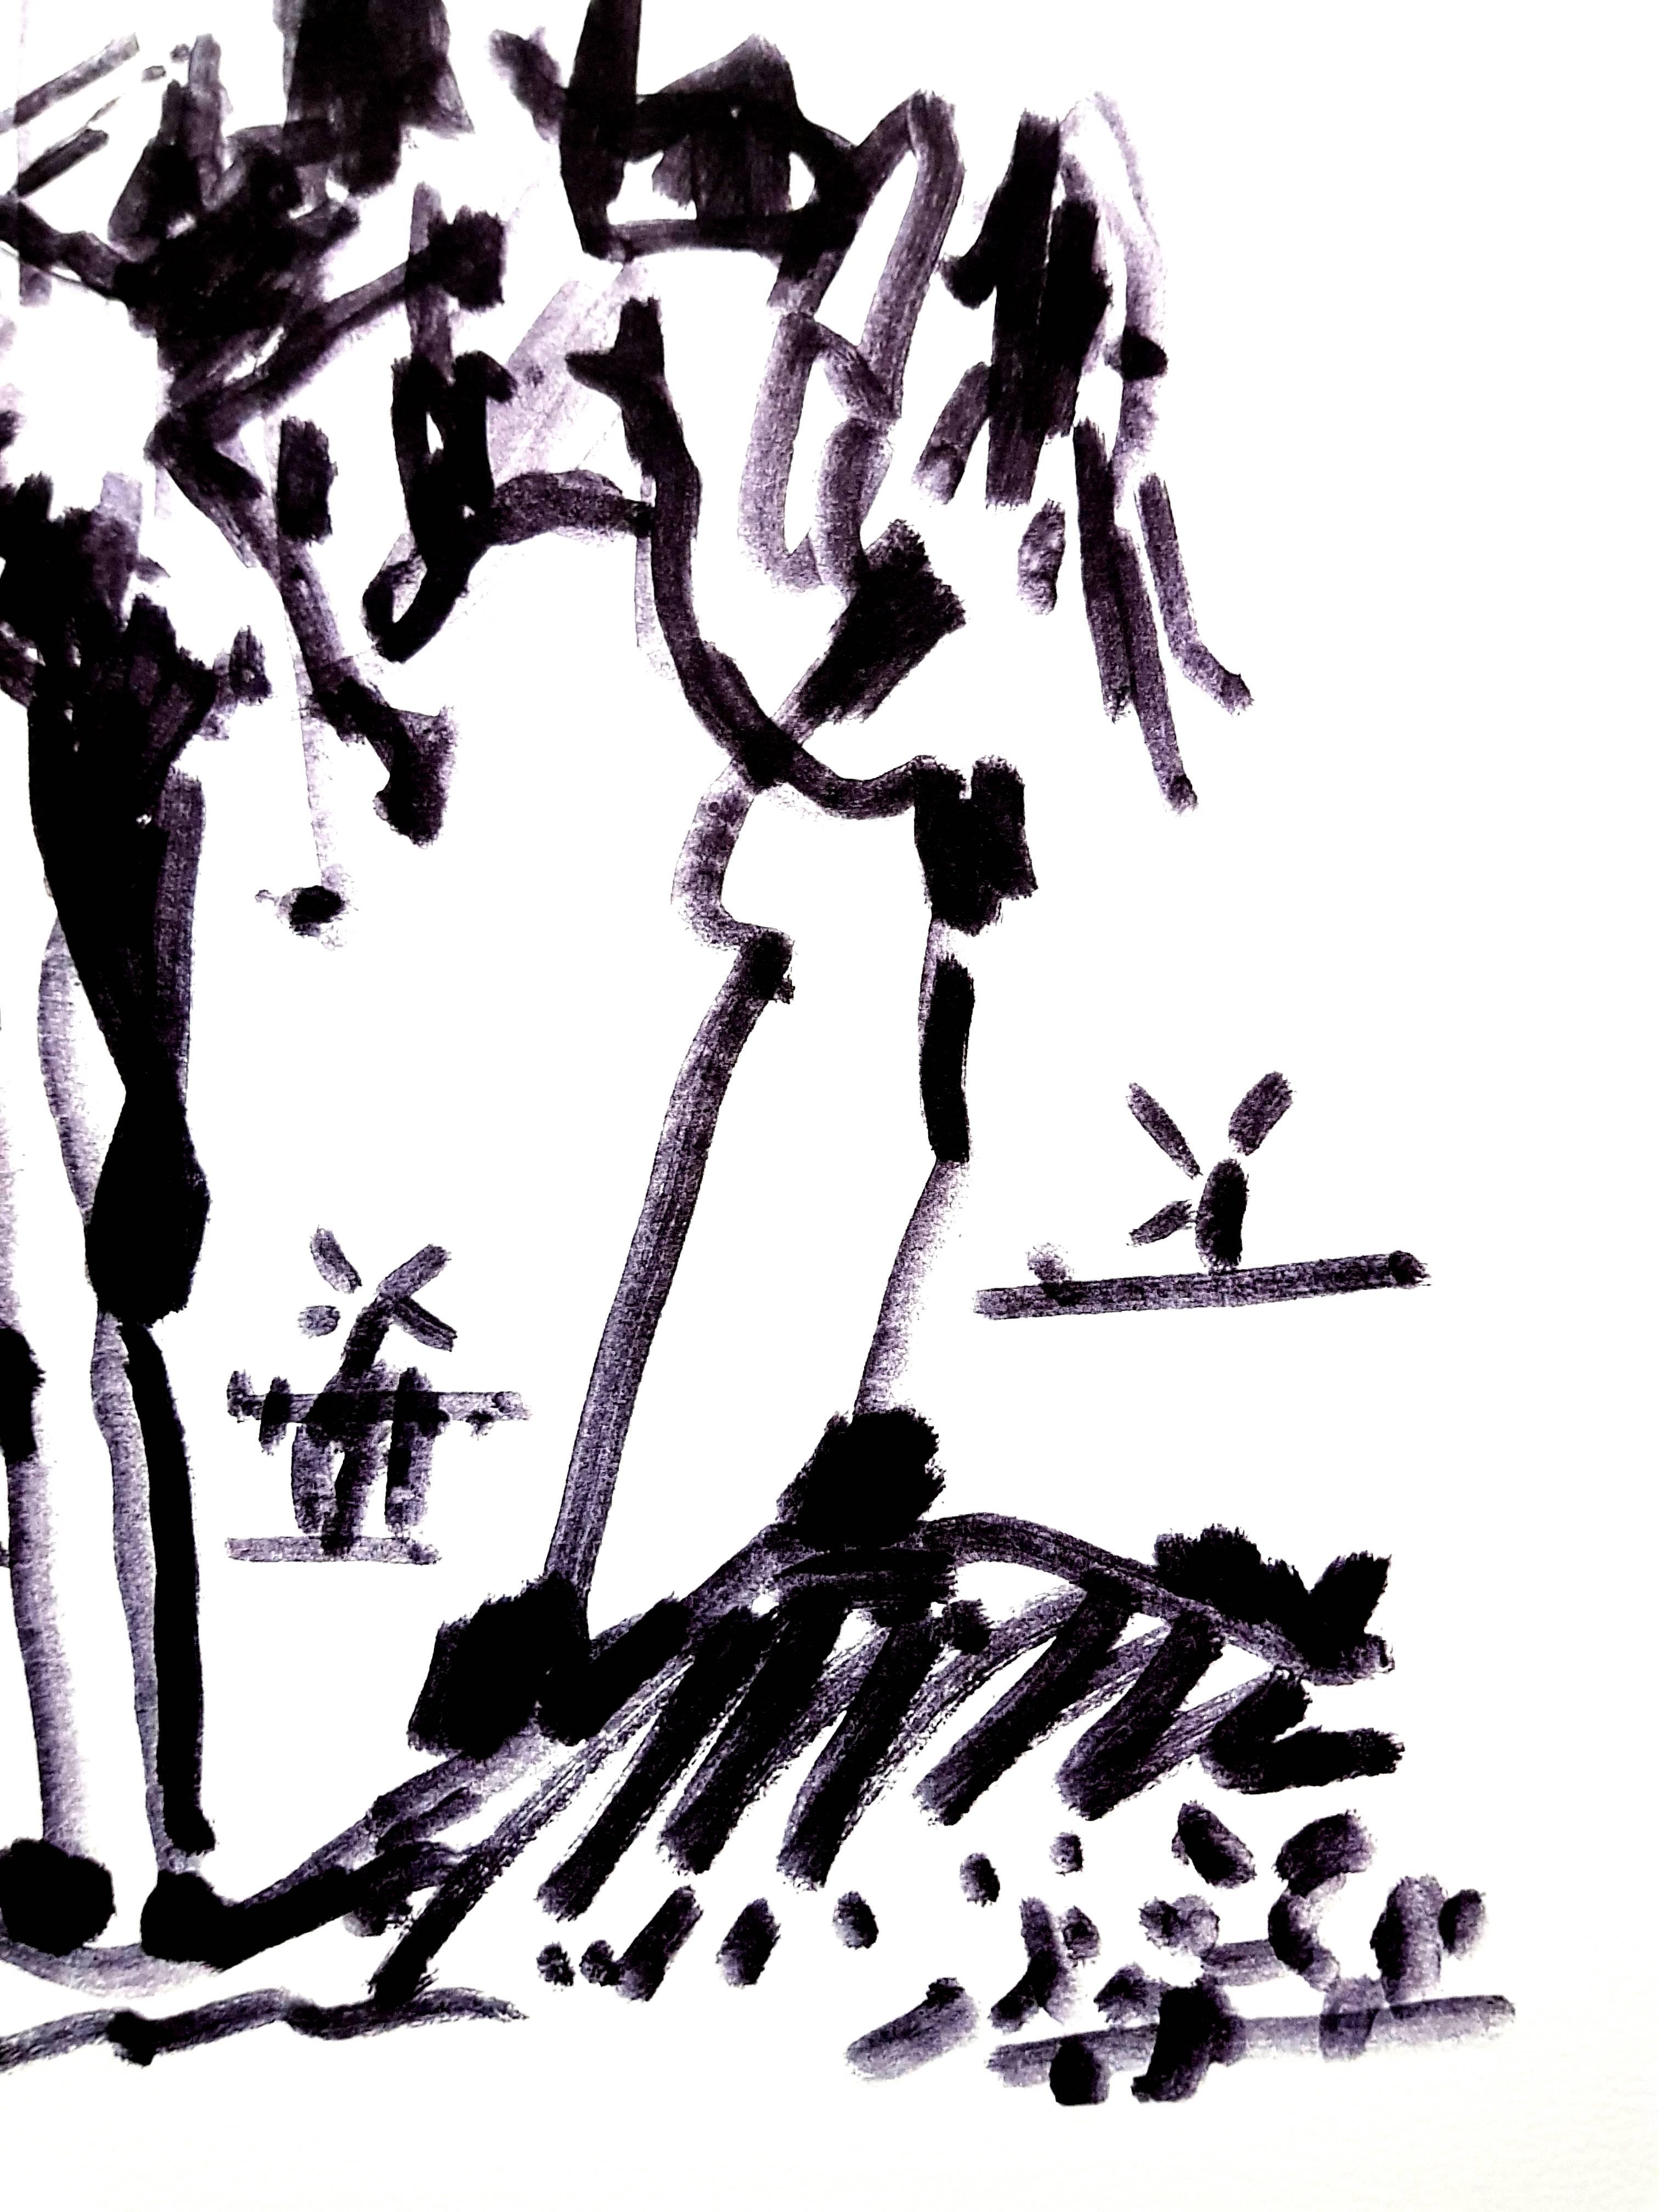 D'après PABLO PICASSO (1881-1973)
Don Quichotte
1955
Dimensions : 65 x 50 cm
Signature imprimée et date
Edition Succession Picasso, Paris (édition de reproduction posthume)
Editions de la Paix